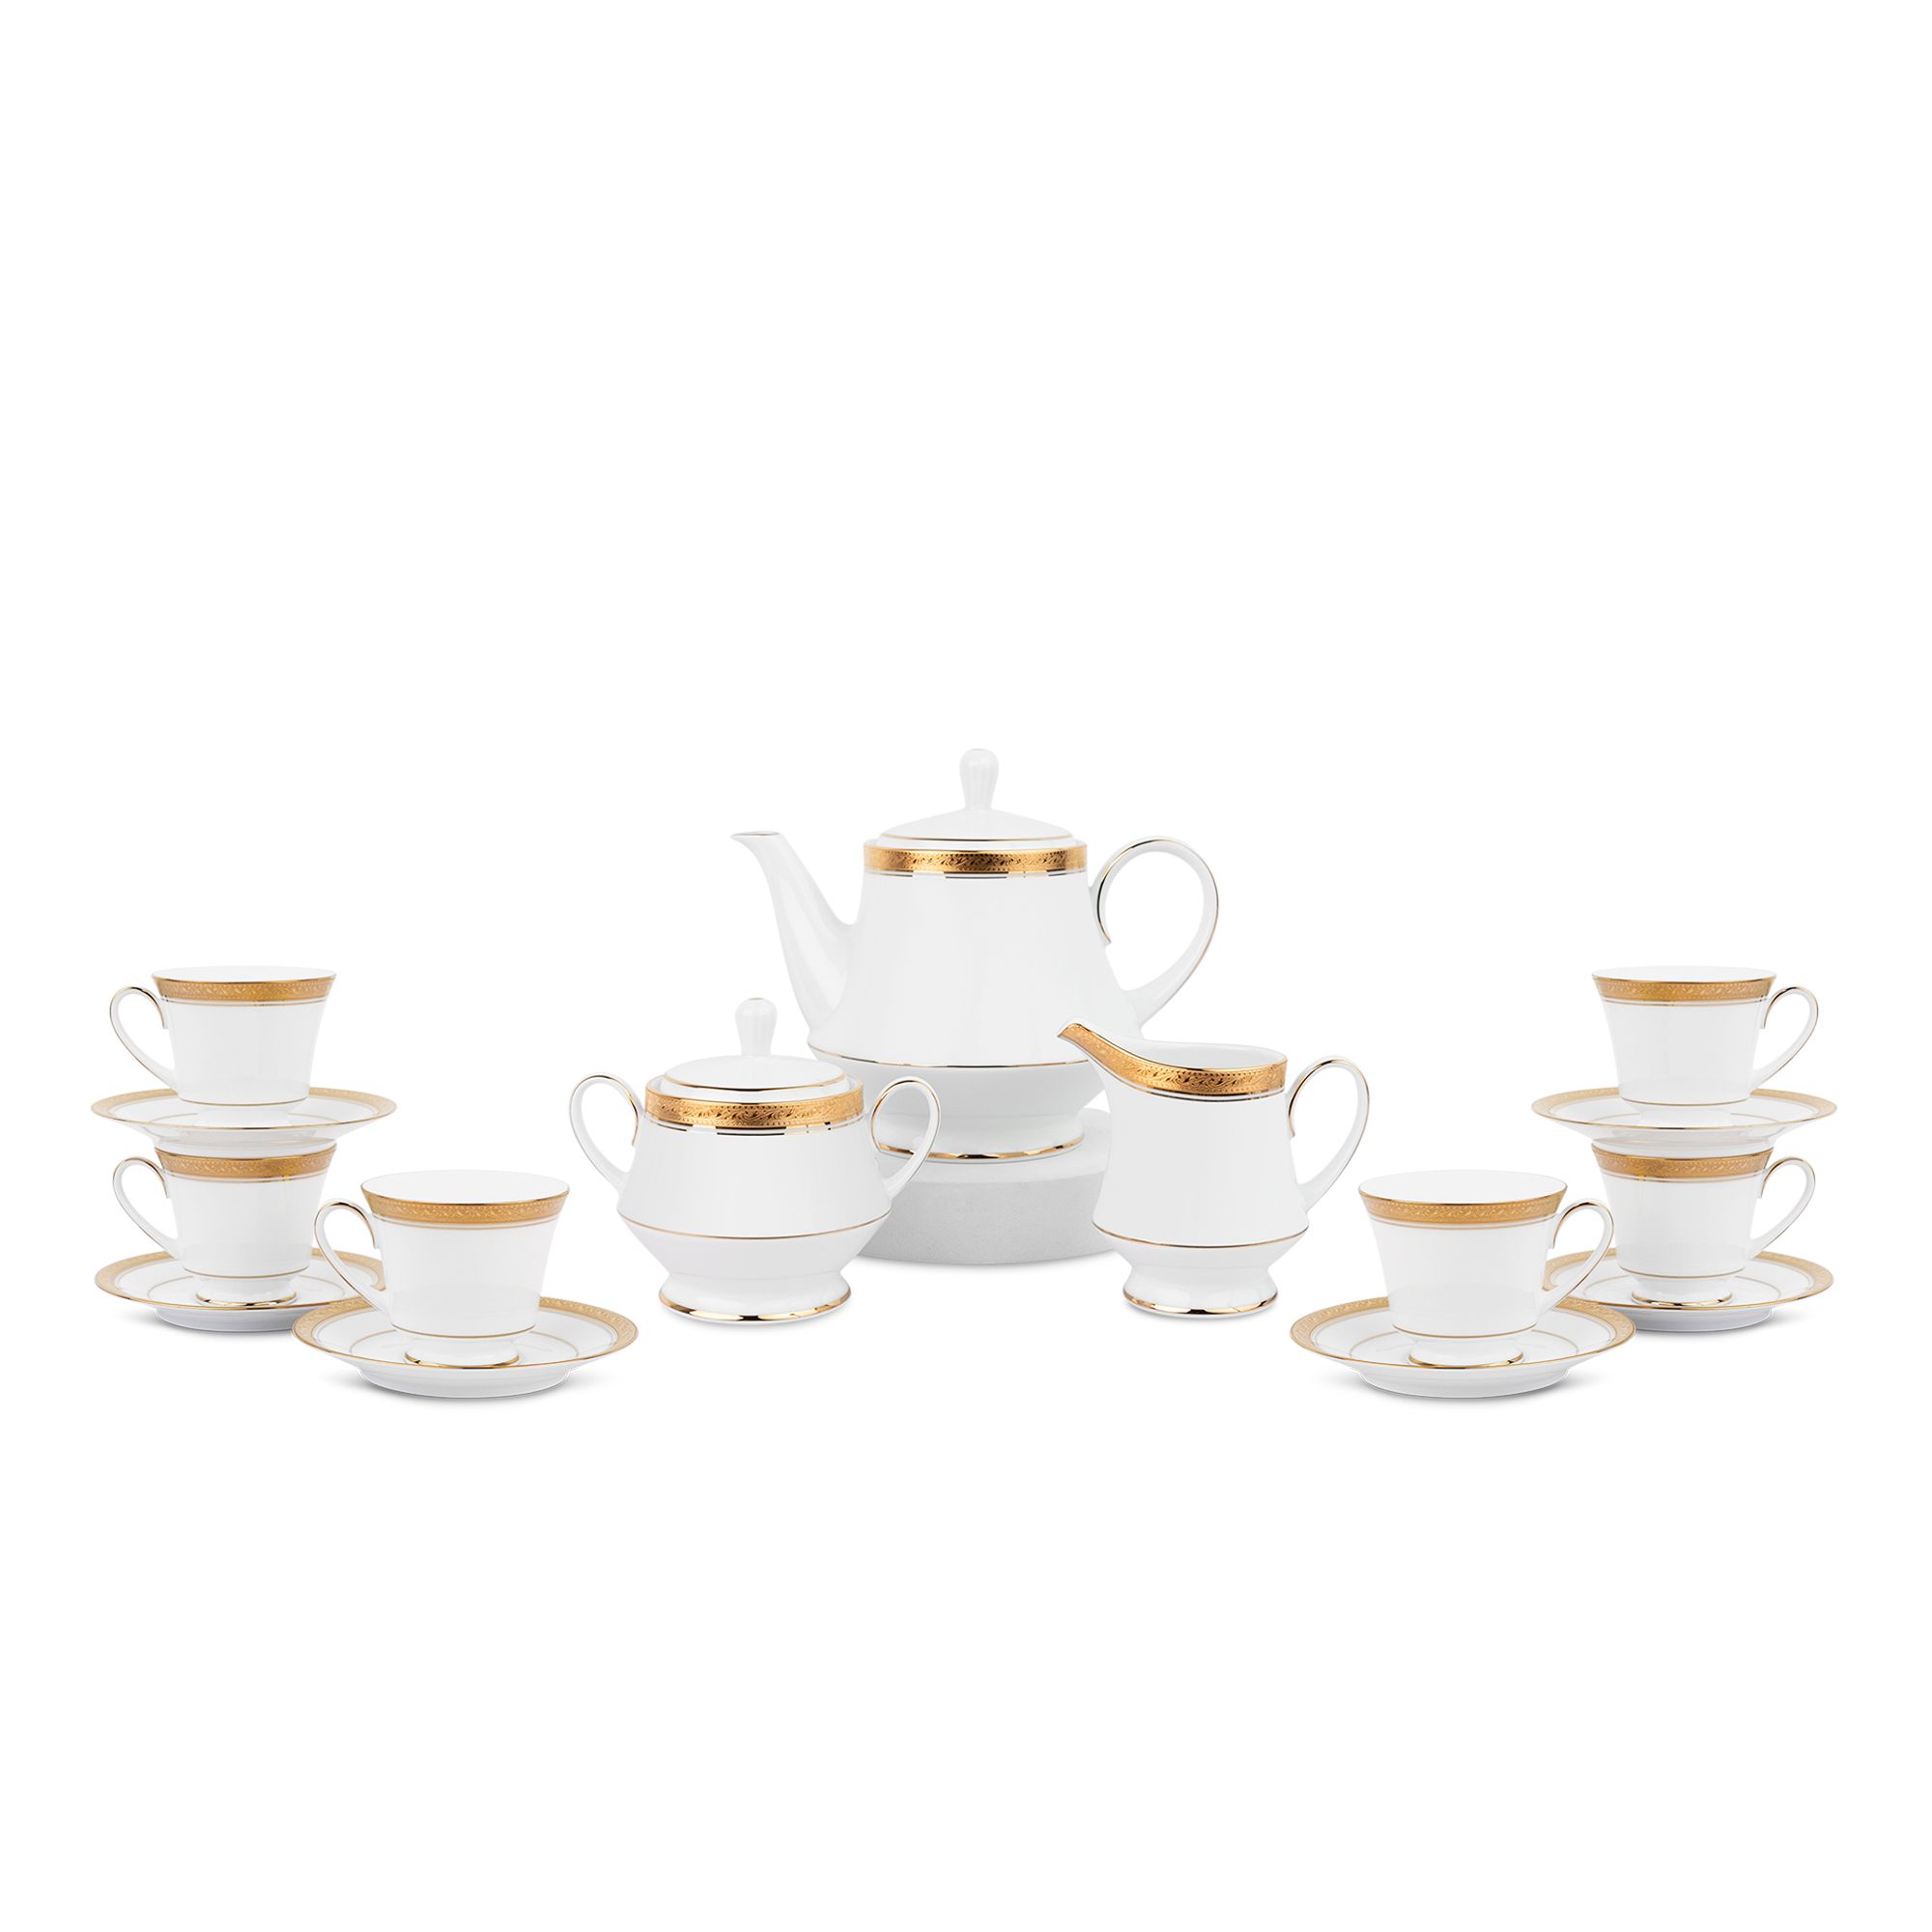  Bộ ấm chén uống trà sứ trắng 15 món (Bình trà 1.200ml) | Crestwood Gold 4167L-T017A 